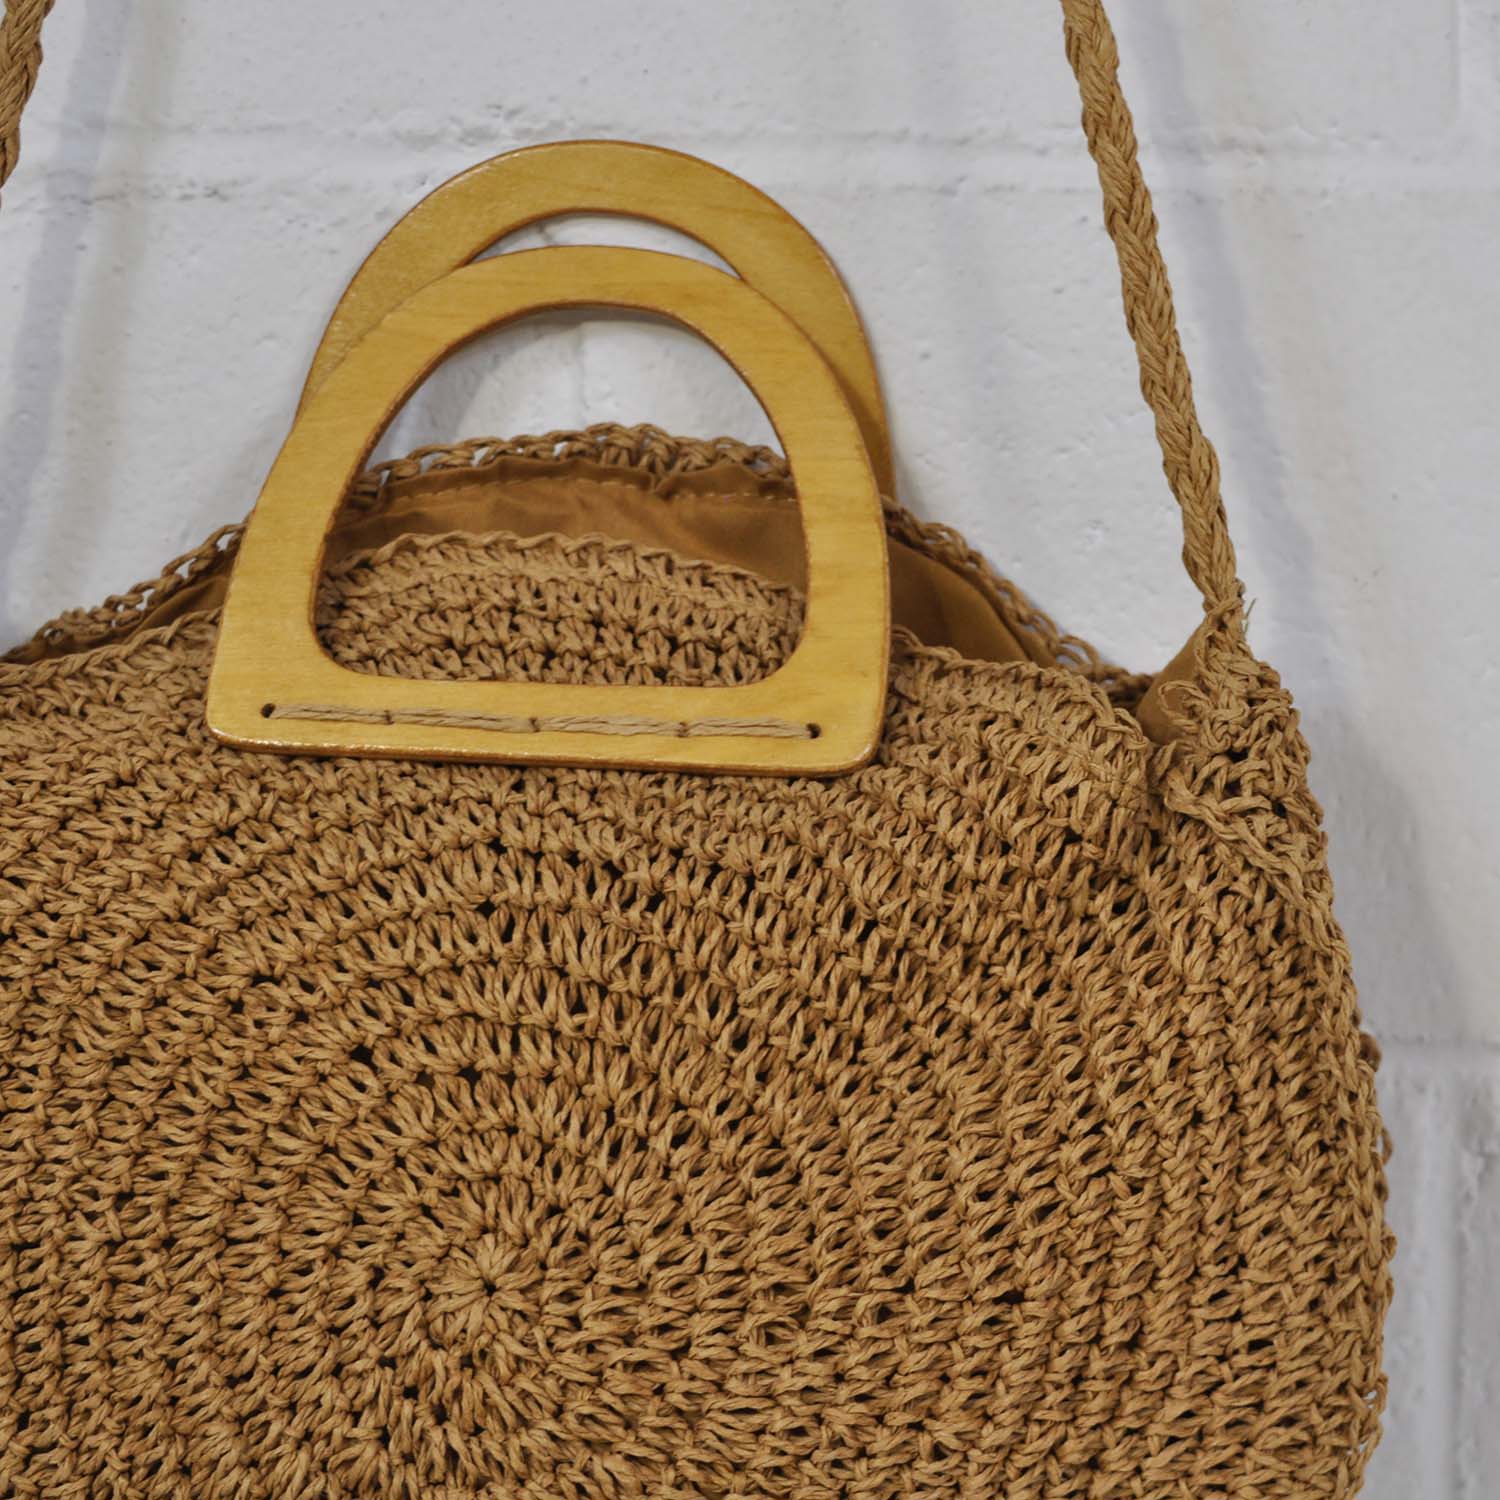 Wooden handle bag
